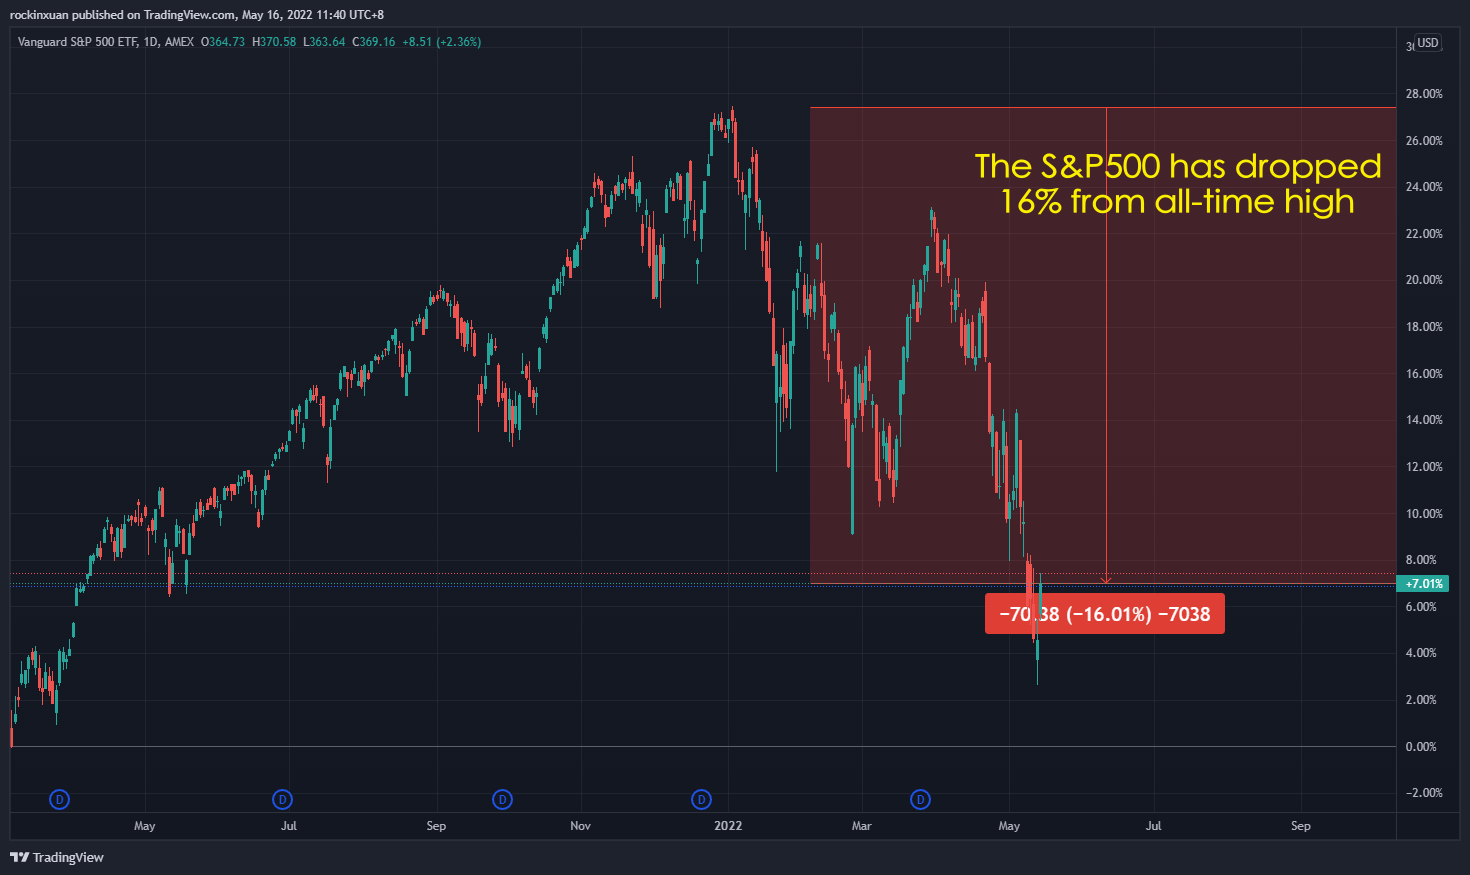 S&P500 bear market